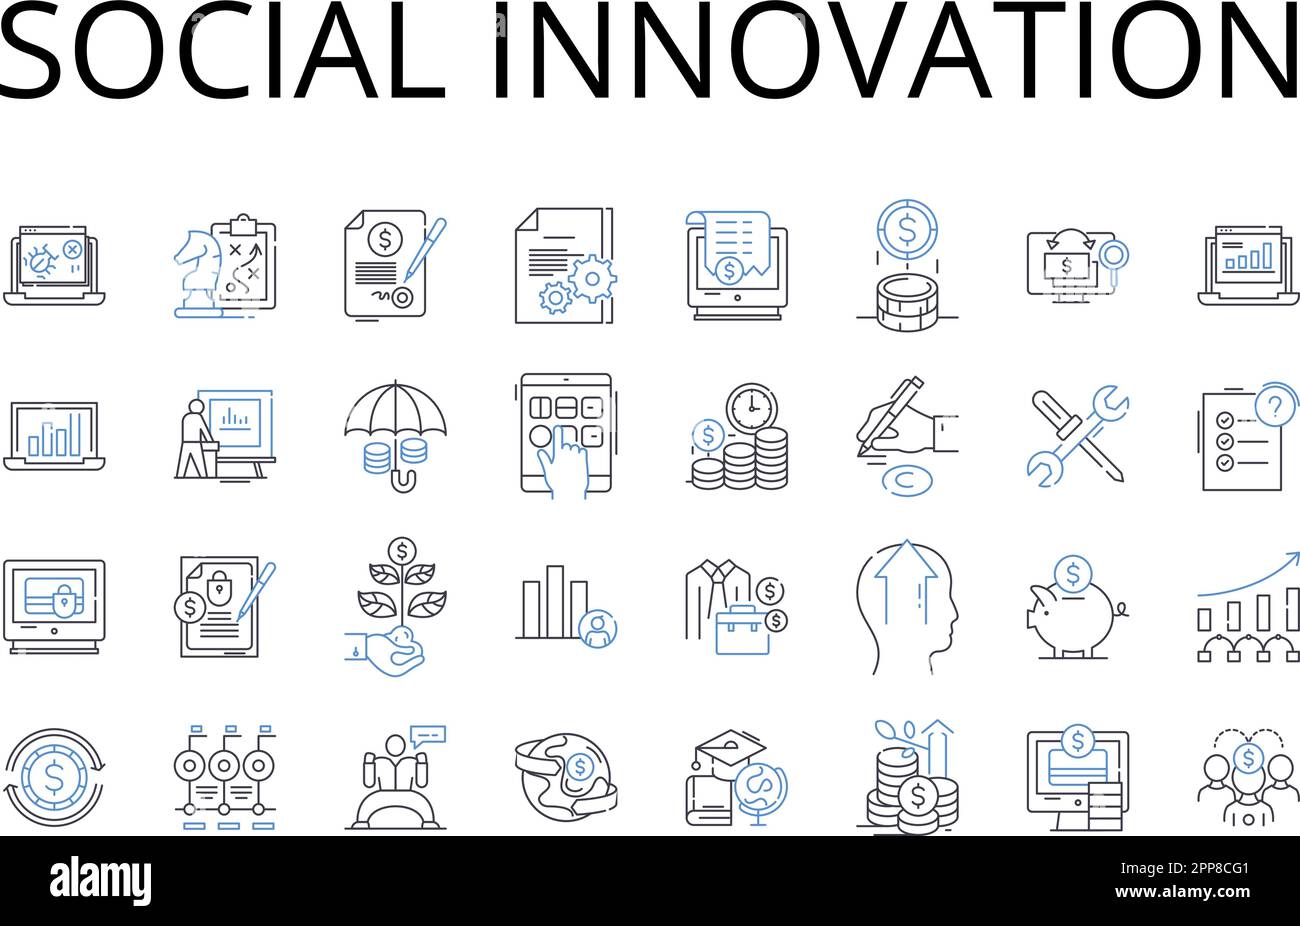 Collezione icone della linea di innovazione sociale. Sostenibilità ambientale, progresso tecnologico, sviluppo comunitario, responsabilità aziendale Illustrazione Vettoriale